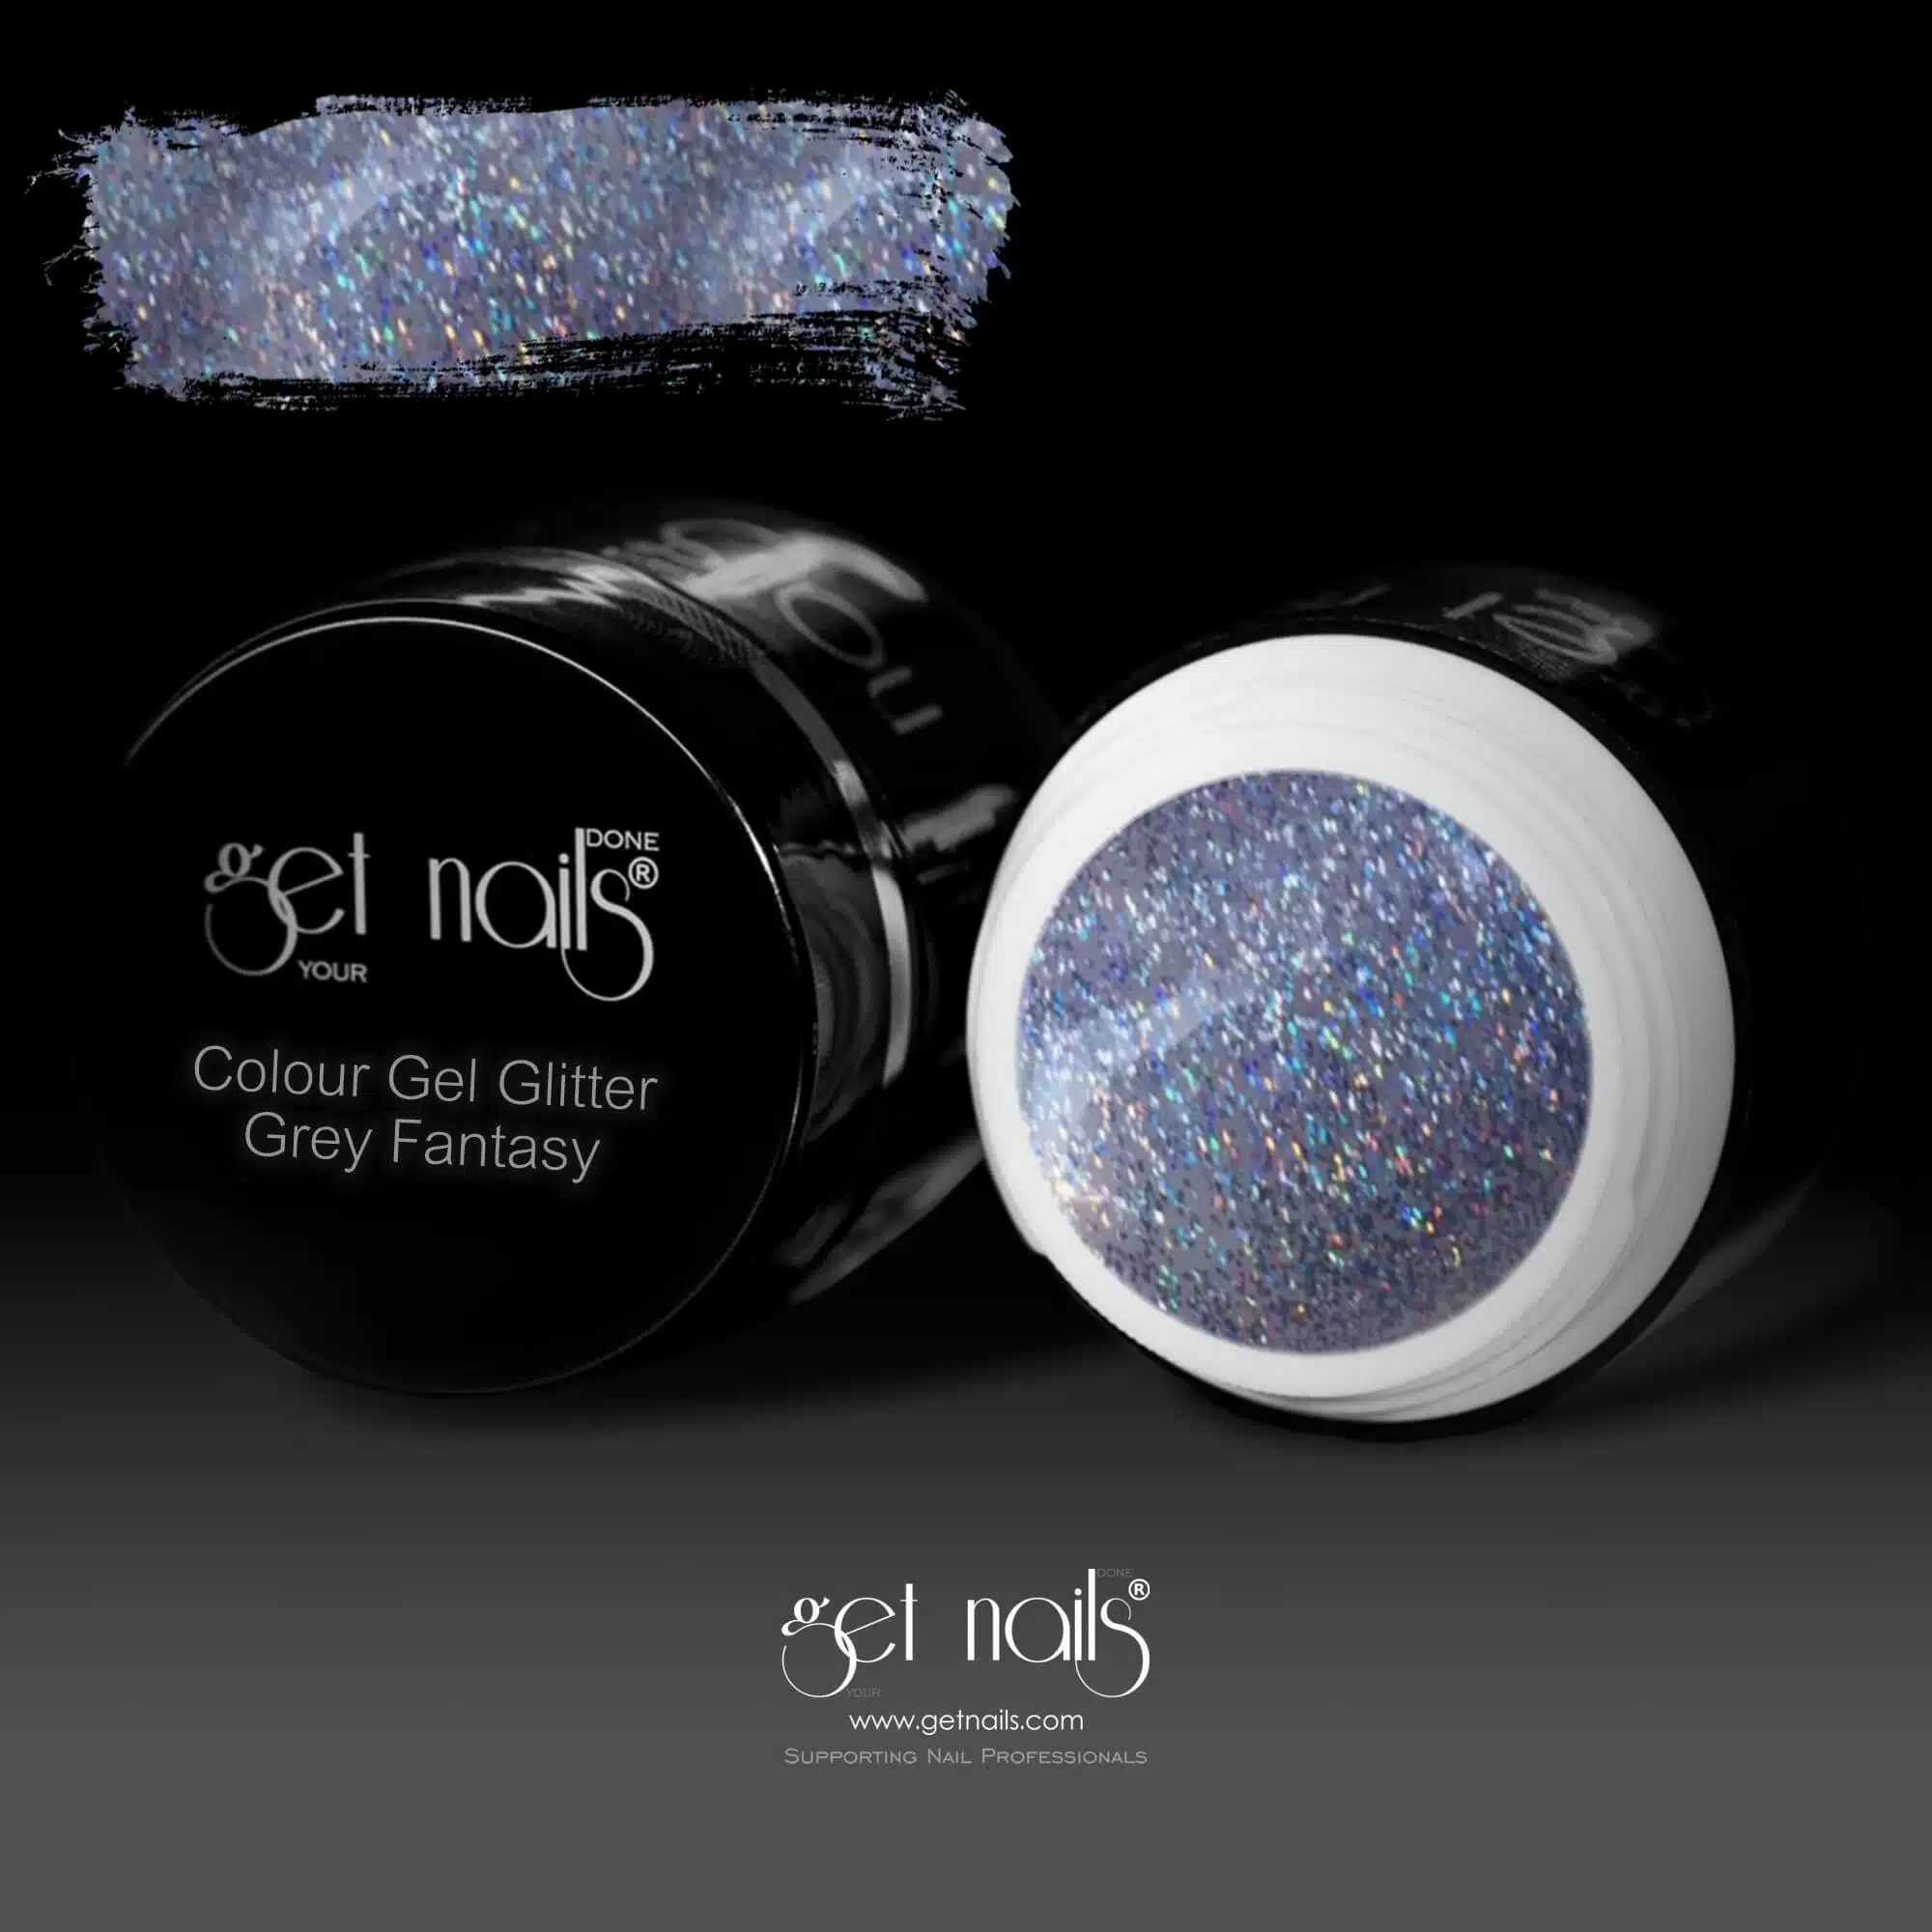 Get Nails Austria - Gel colorato Glitter Grey Fantasy 5g